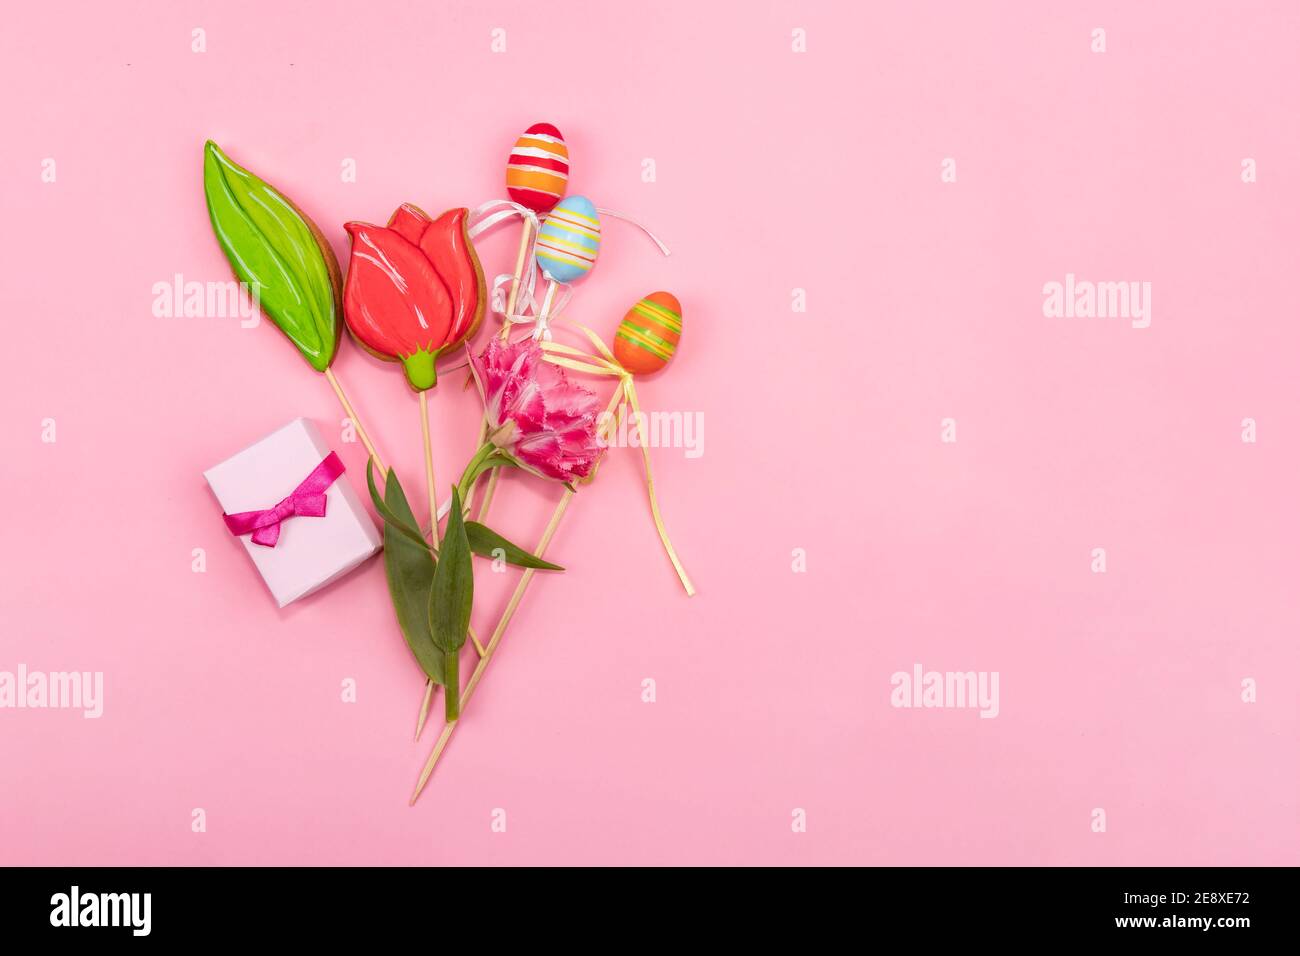 Frühlingskarte Konzept. Ein Strauß Tulpen, Plätzchen in Form einer Tulpe, Ostereier und eine kleine Schachtel mit Gewürzen liegt auf einem rosa Hintergrund. Stockfoto